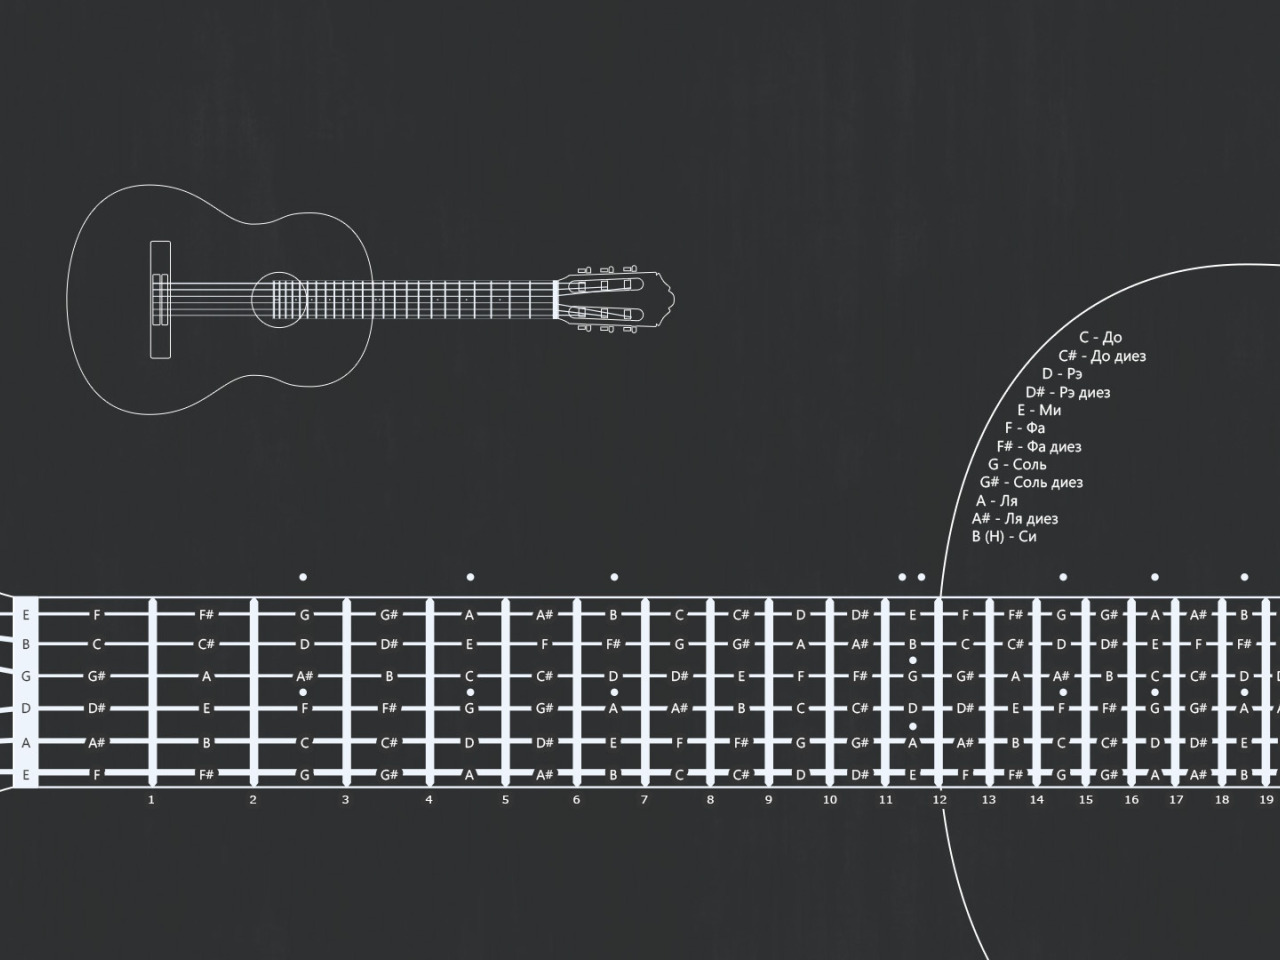 Расположение нот на гитаре 6. Схема нот на грифе гитары. Ноты на грифе электрогитары 6 струн.